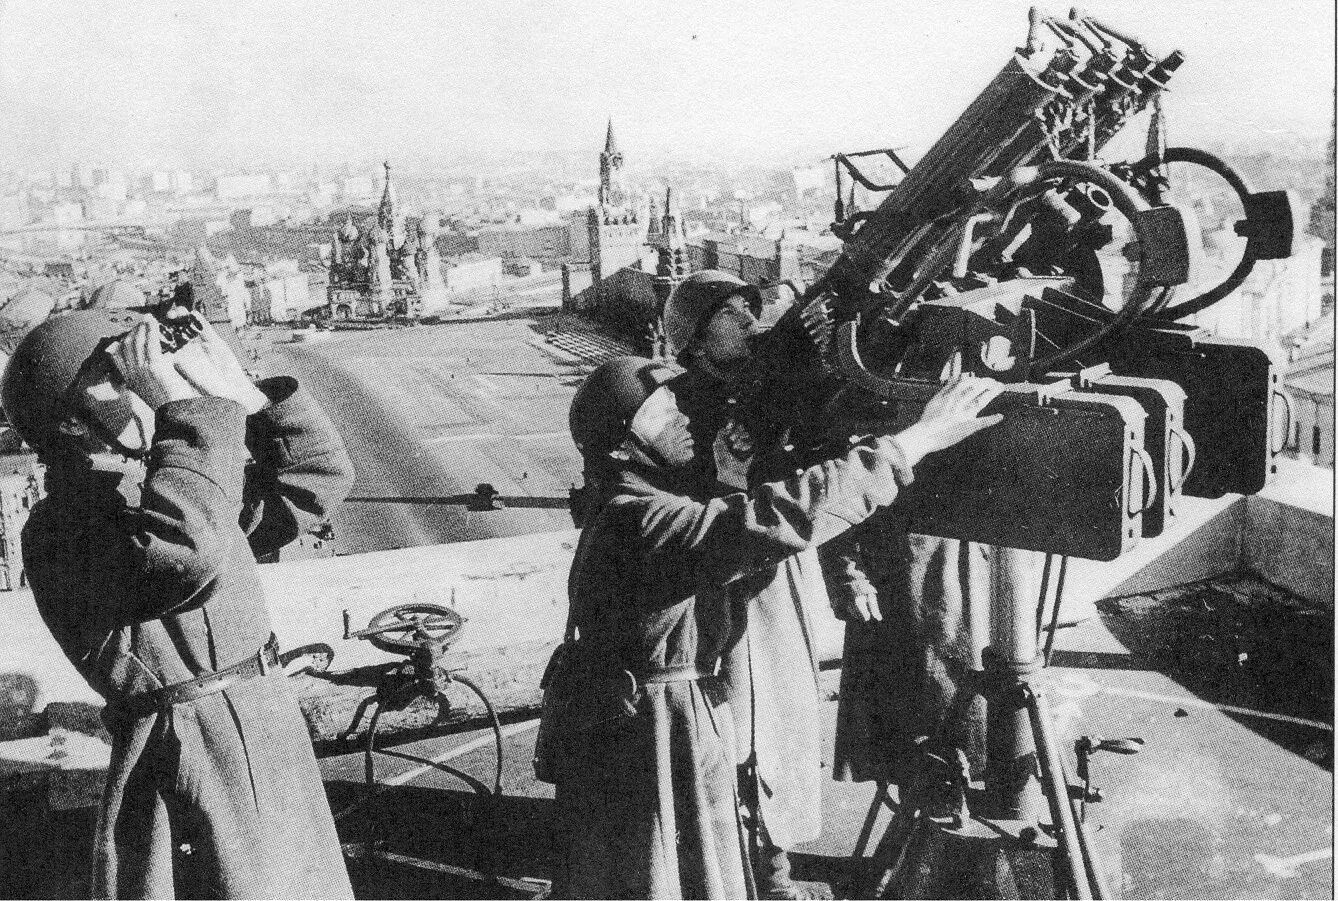 Зенитный пулемет ДШК 1941 зенитный. Зенитки в Москве 1941. Московская паника 16 октября 1941 года. Звуки отечественной войны